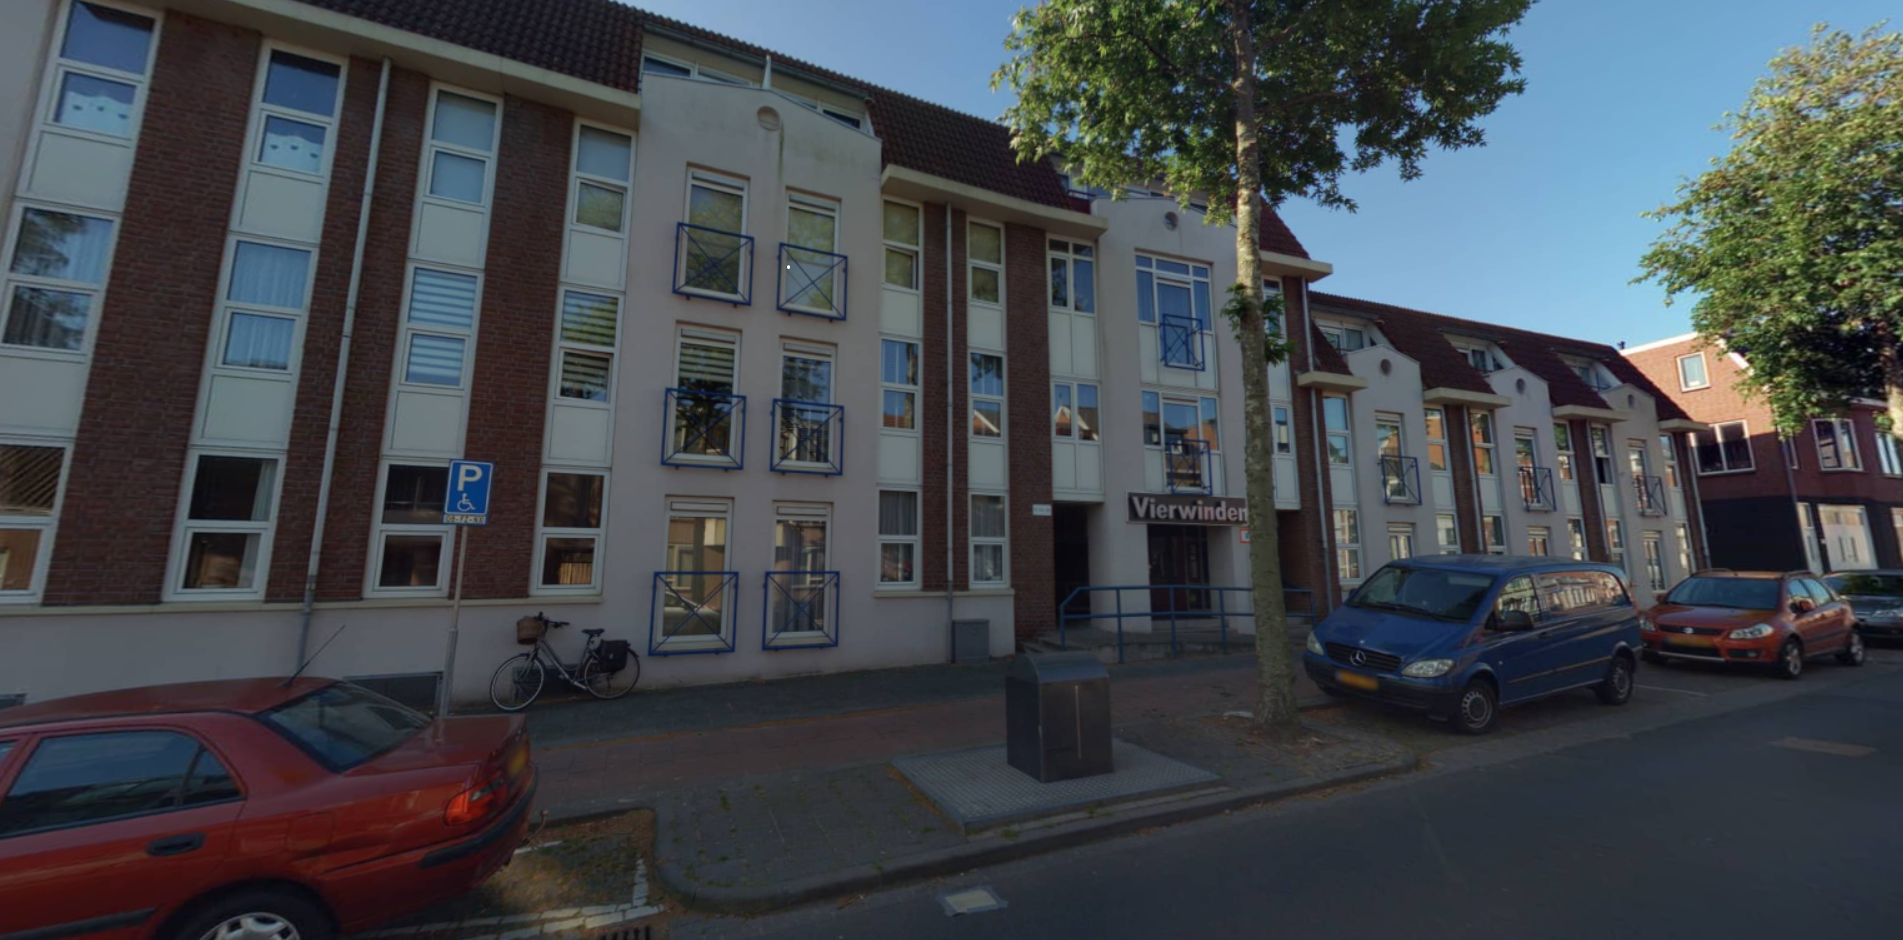 Van Dedemstraat 37, 4611 BD Bergen op Zoom, Nederland